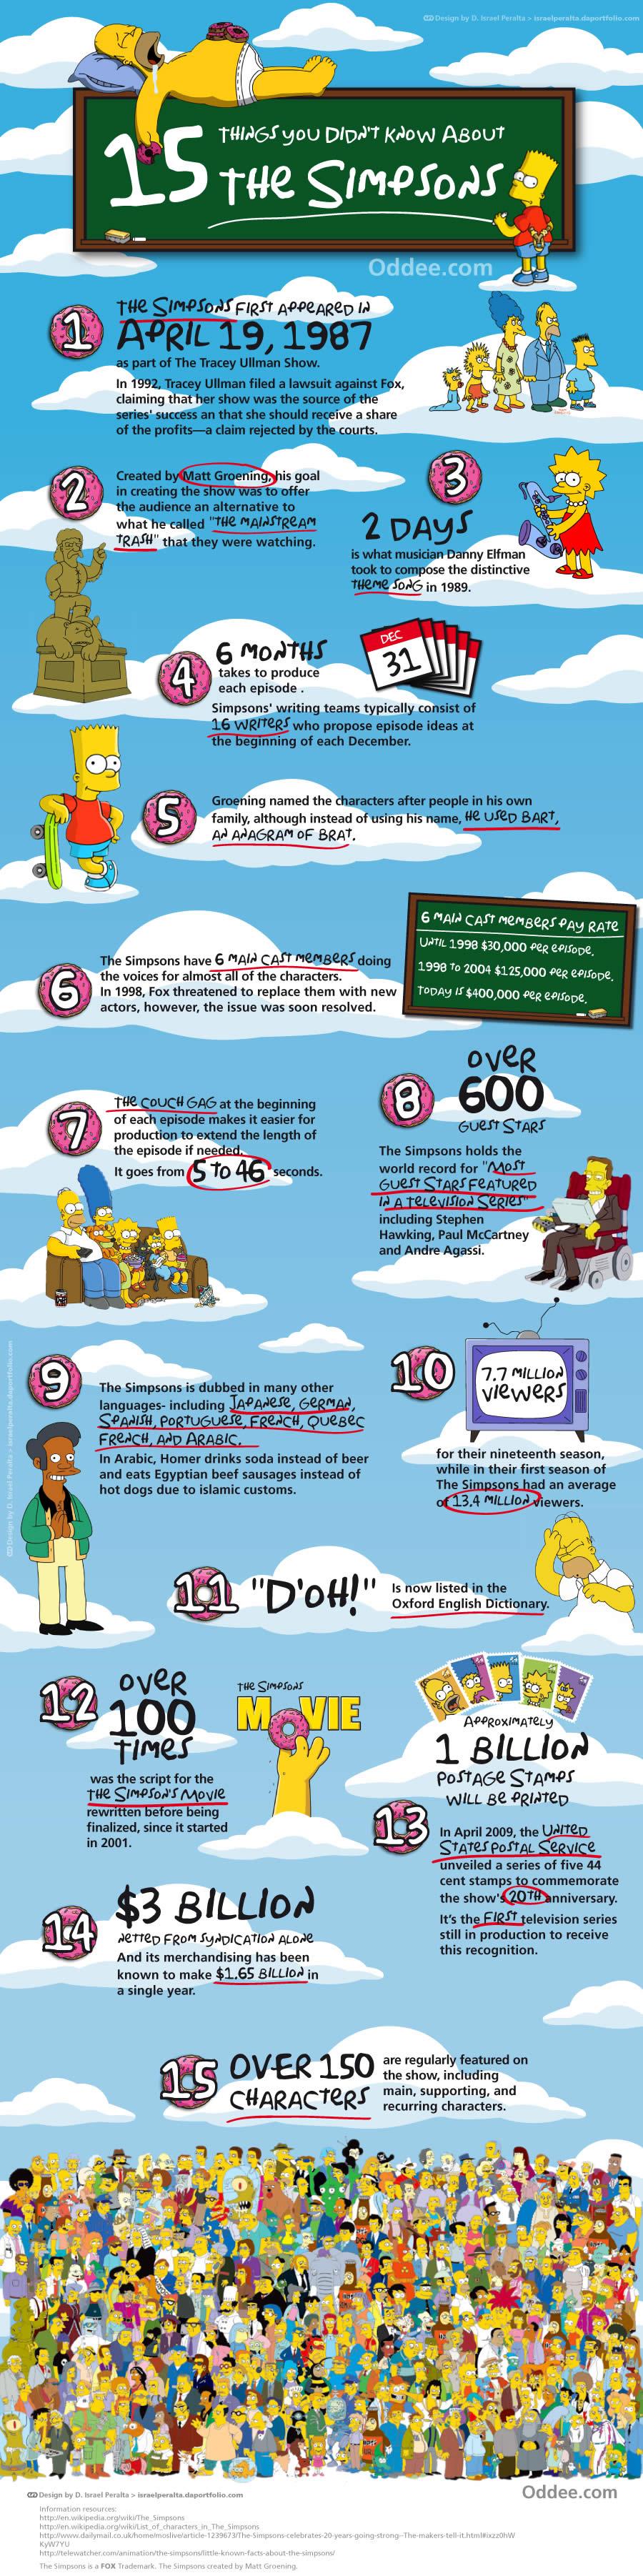 15 choses vous ne savez pas sur les simpsons 15 choses que vous ne savez pas sur les Simpsons !